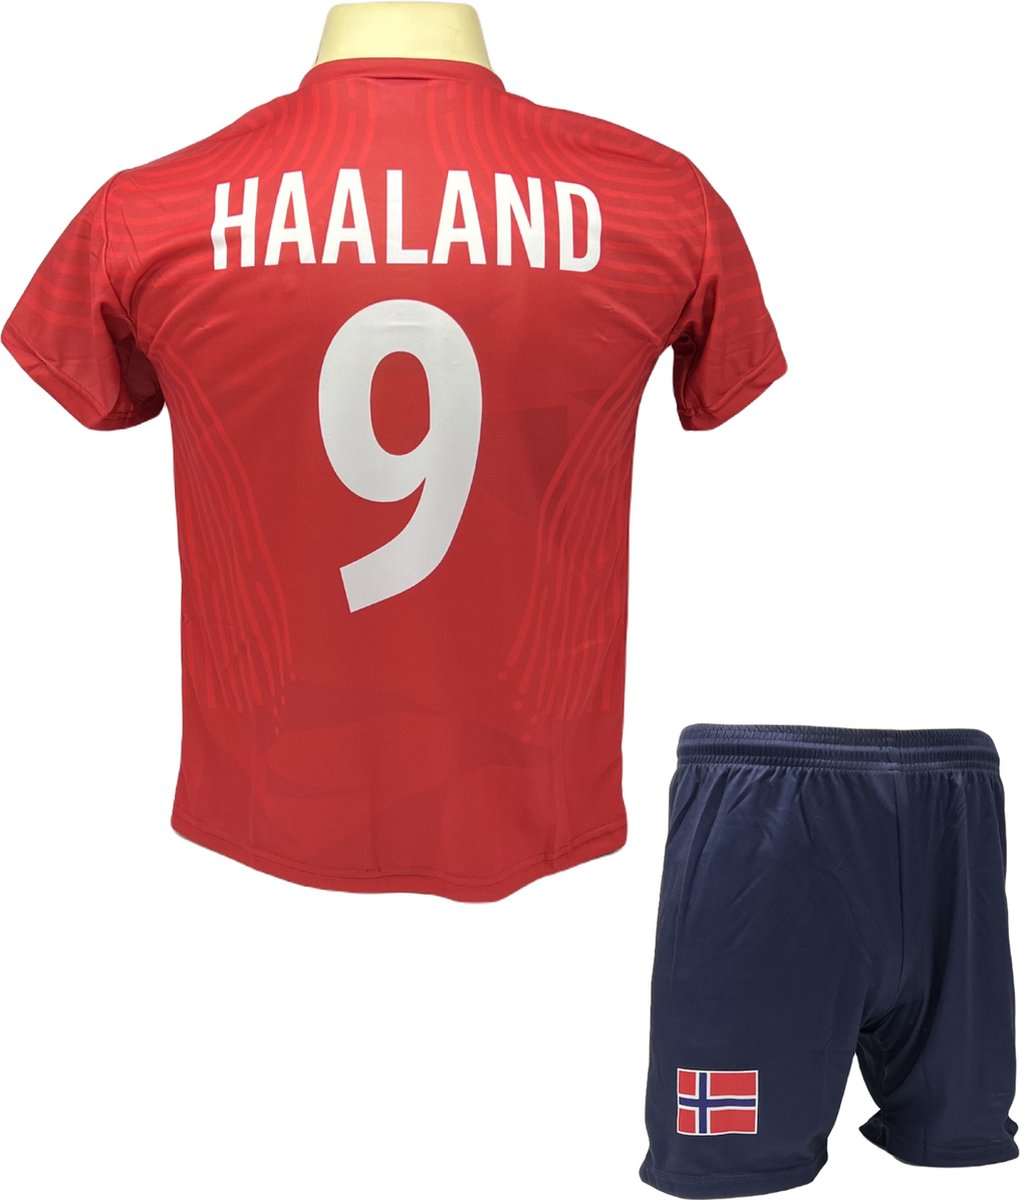 Haaland Voetbalshirt en Broekje Voetbaltenue Noorwegen - Maat M